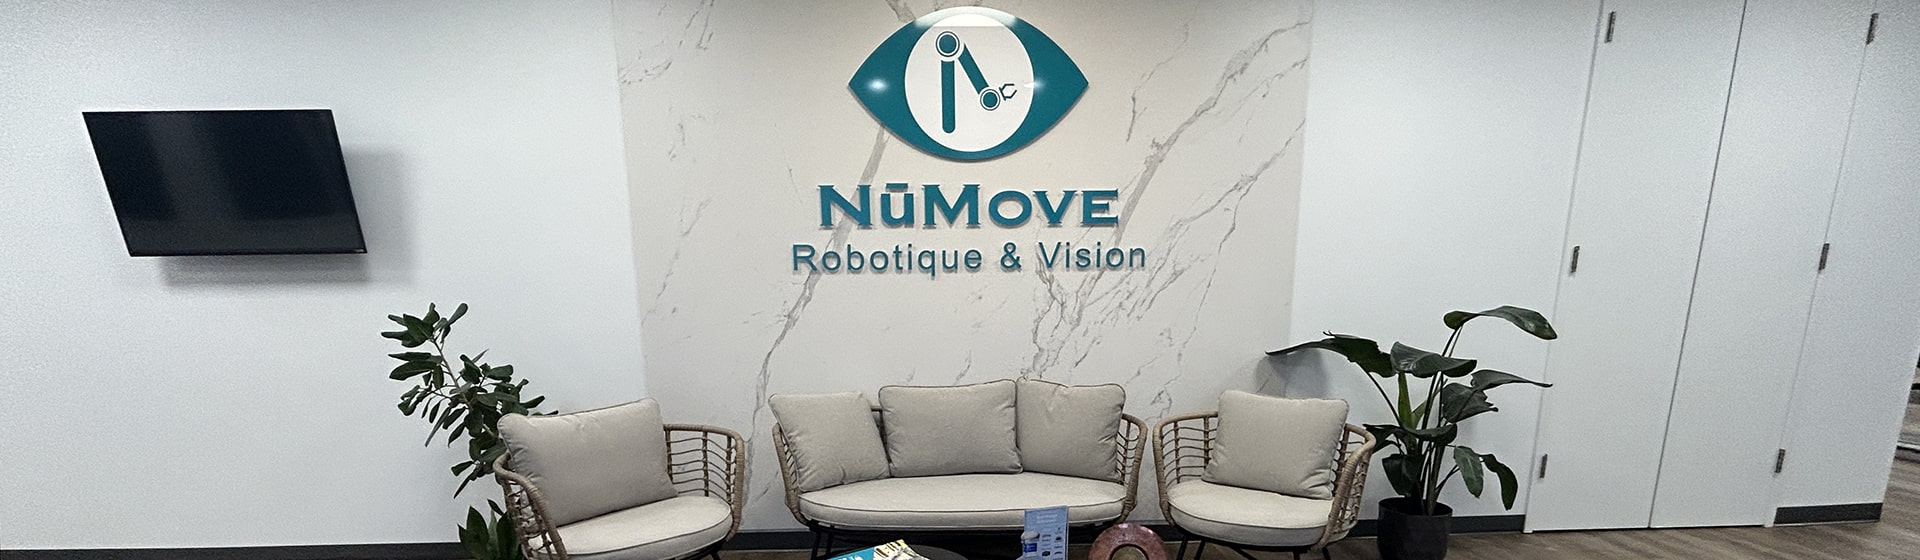 NūMove On The Move!